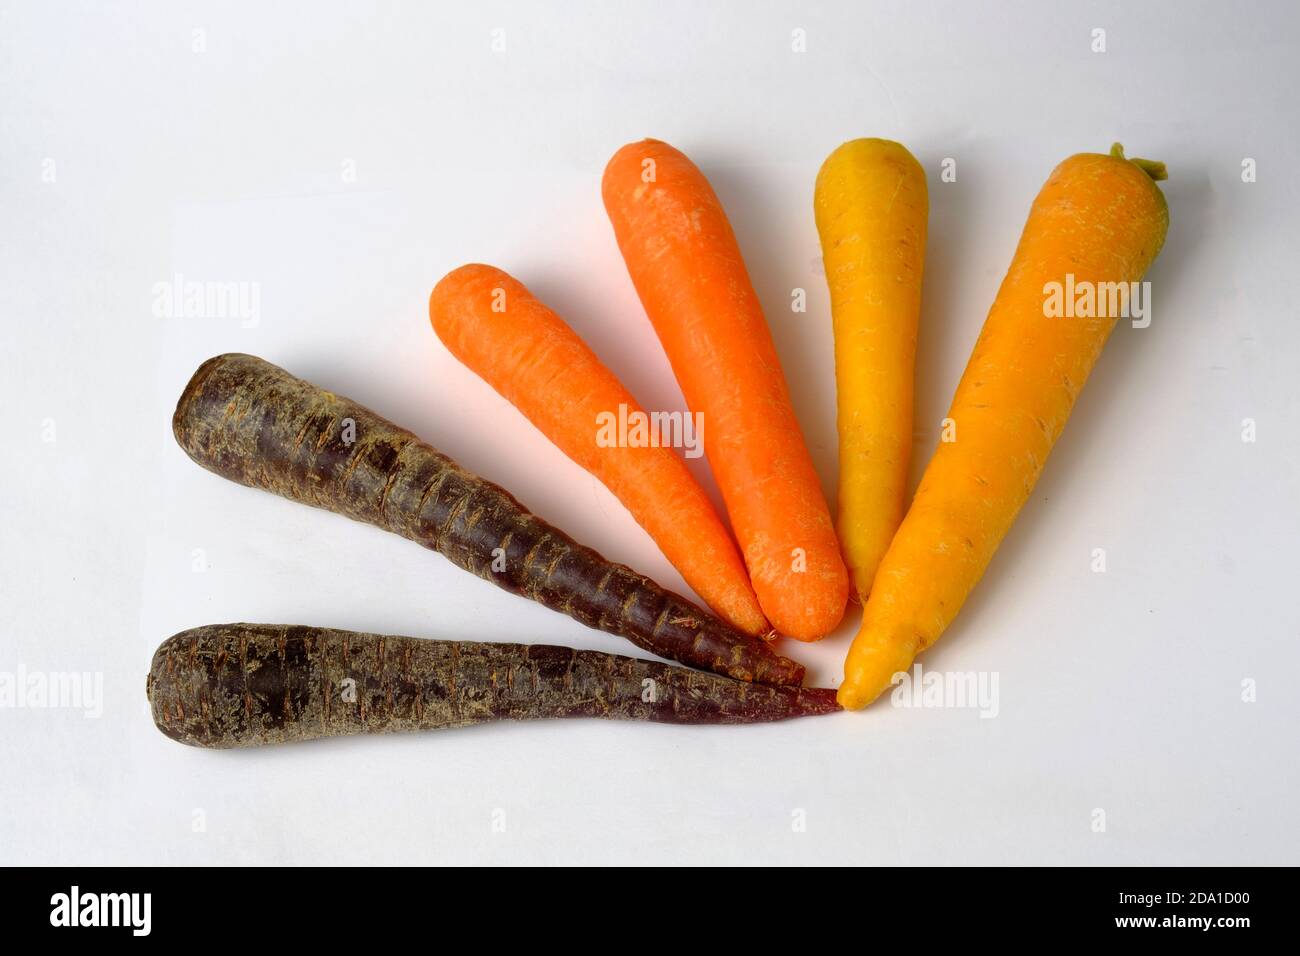 Regenbogen Karotten isoliert auf weiß. Spezielle Auswahl an verschiedenfarbigen Karotten orange, lila und gelb. Stockfoto